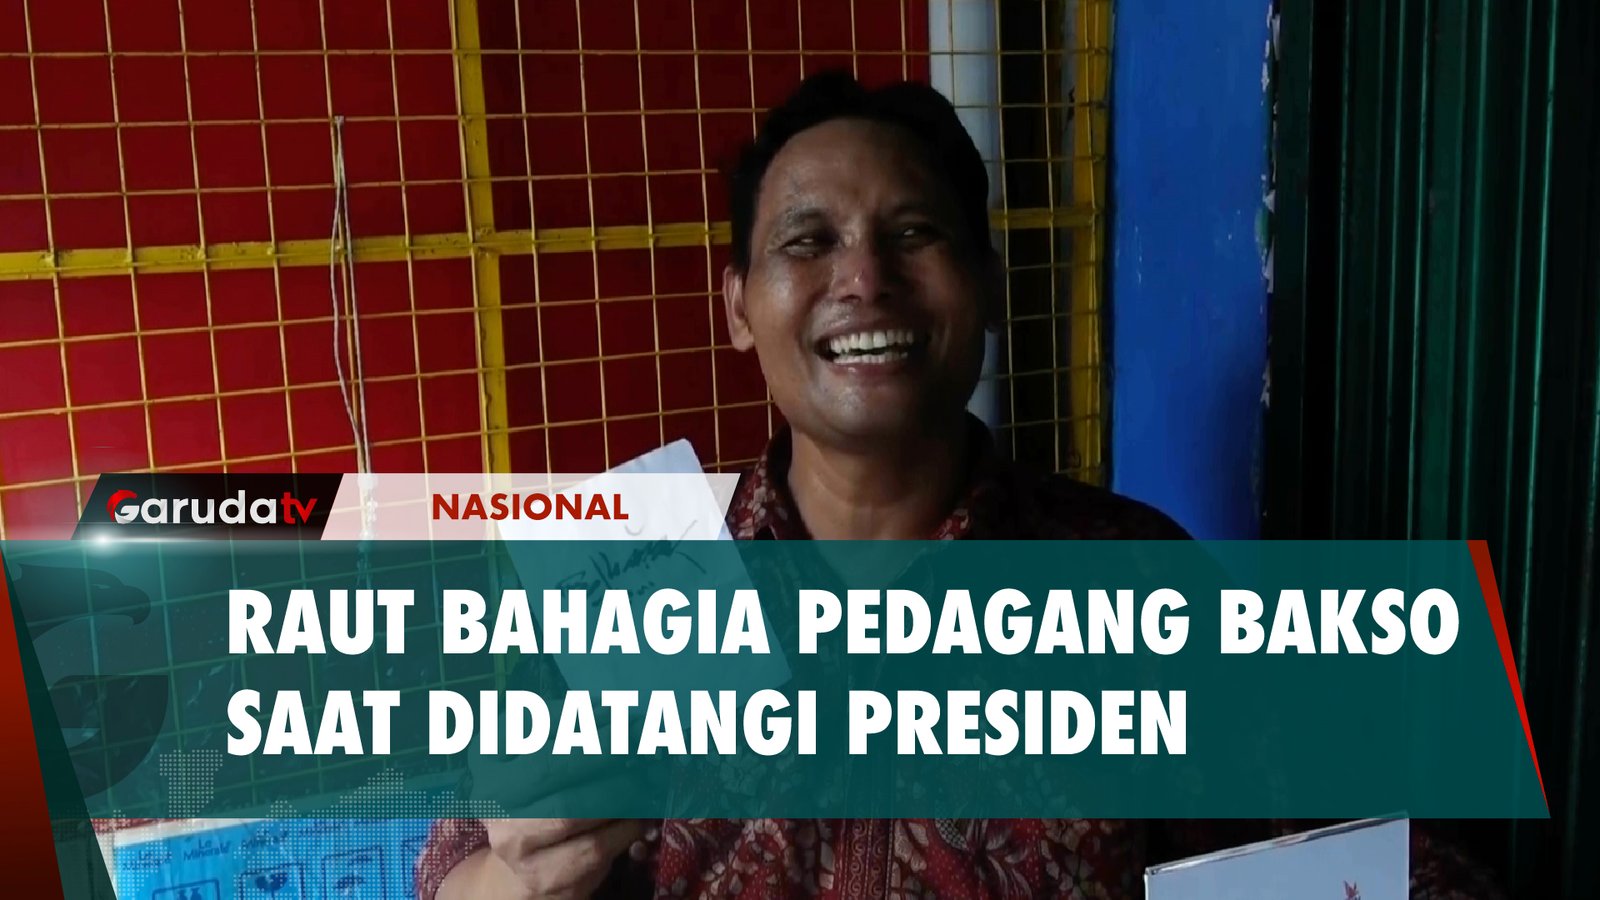 Didatangi Presiden Jokowi dan Prabowo, Tukang Bakso Ini Sampai Ucap Syukur!